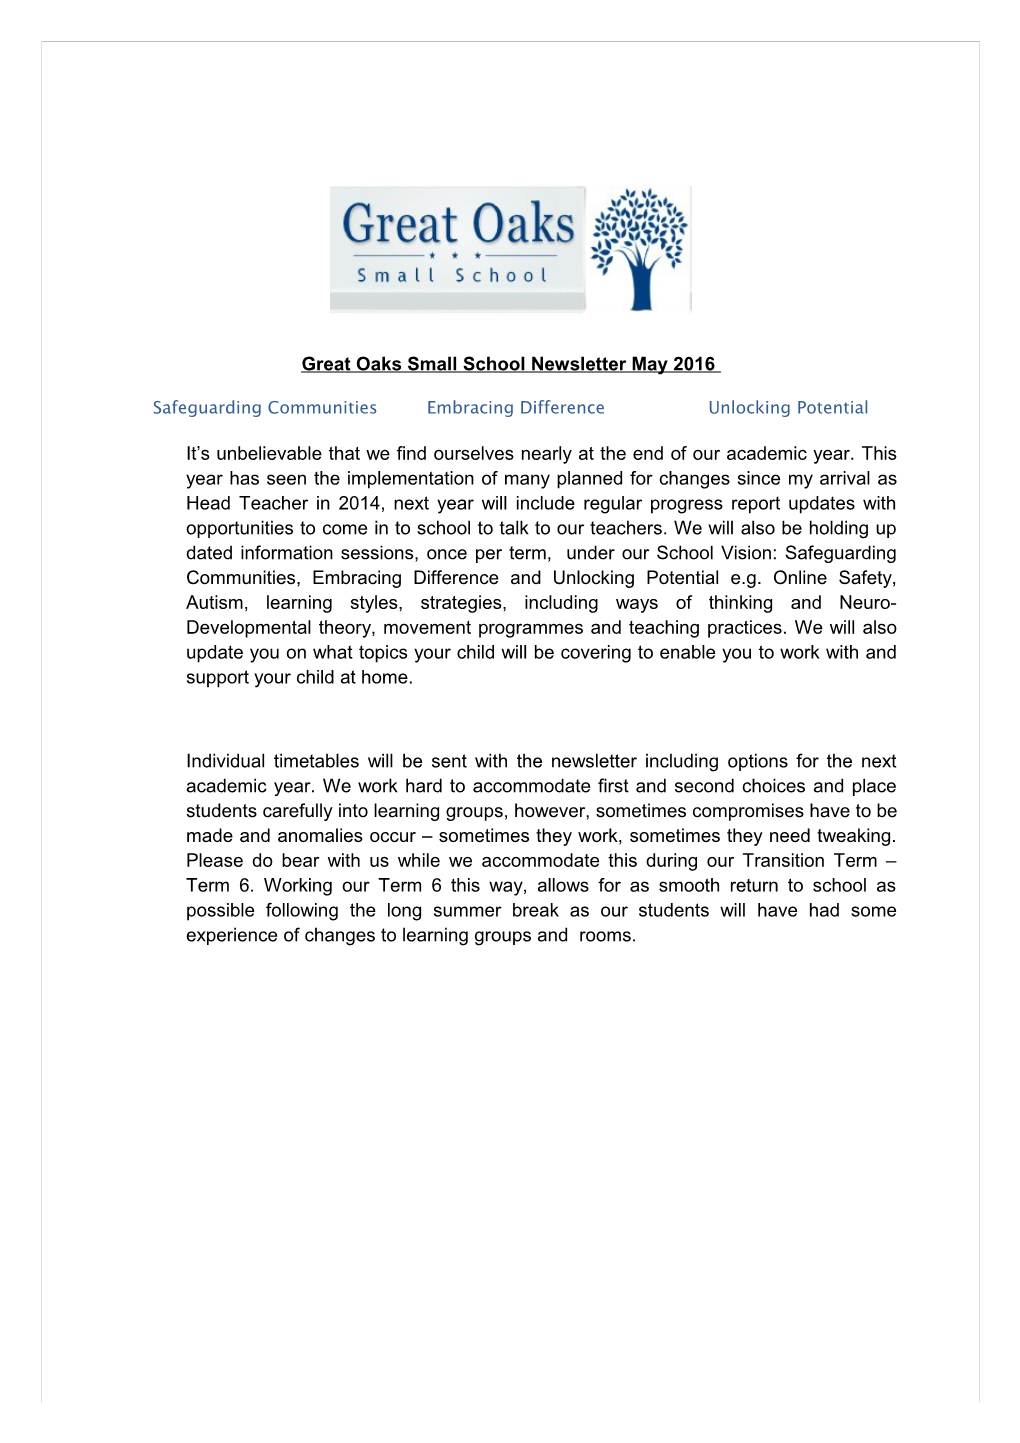 Great Oaks Small School Newslettermay 2016